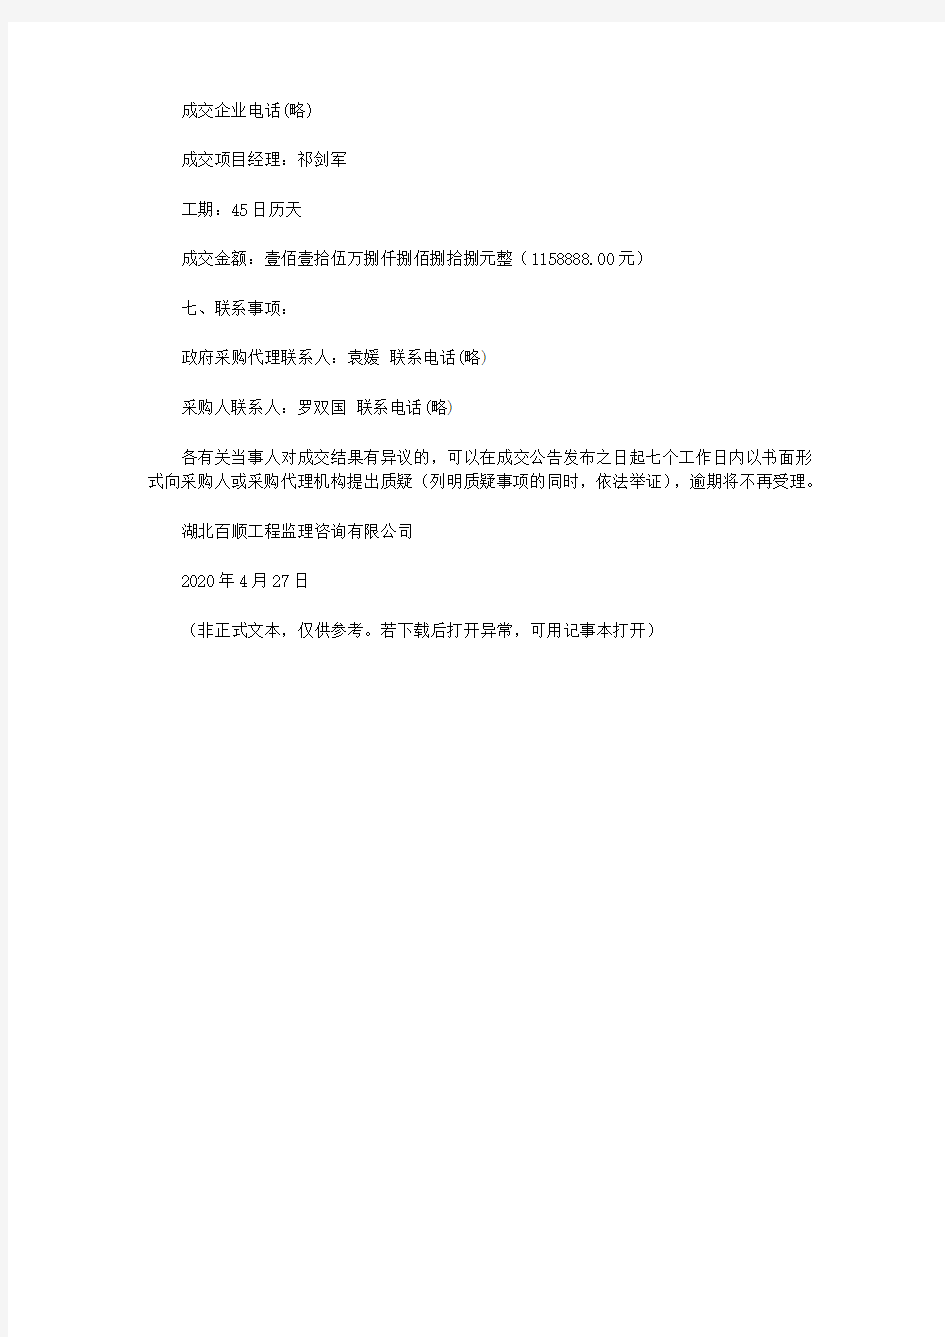 广水市第一高级中学装修改造项目成交公告(2020)